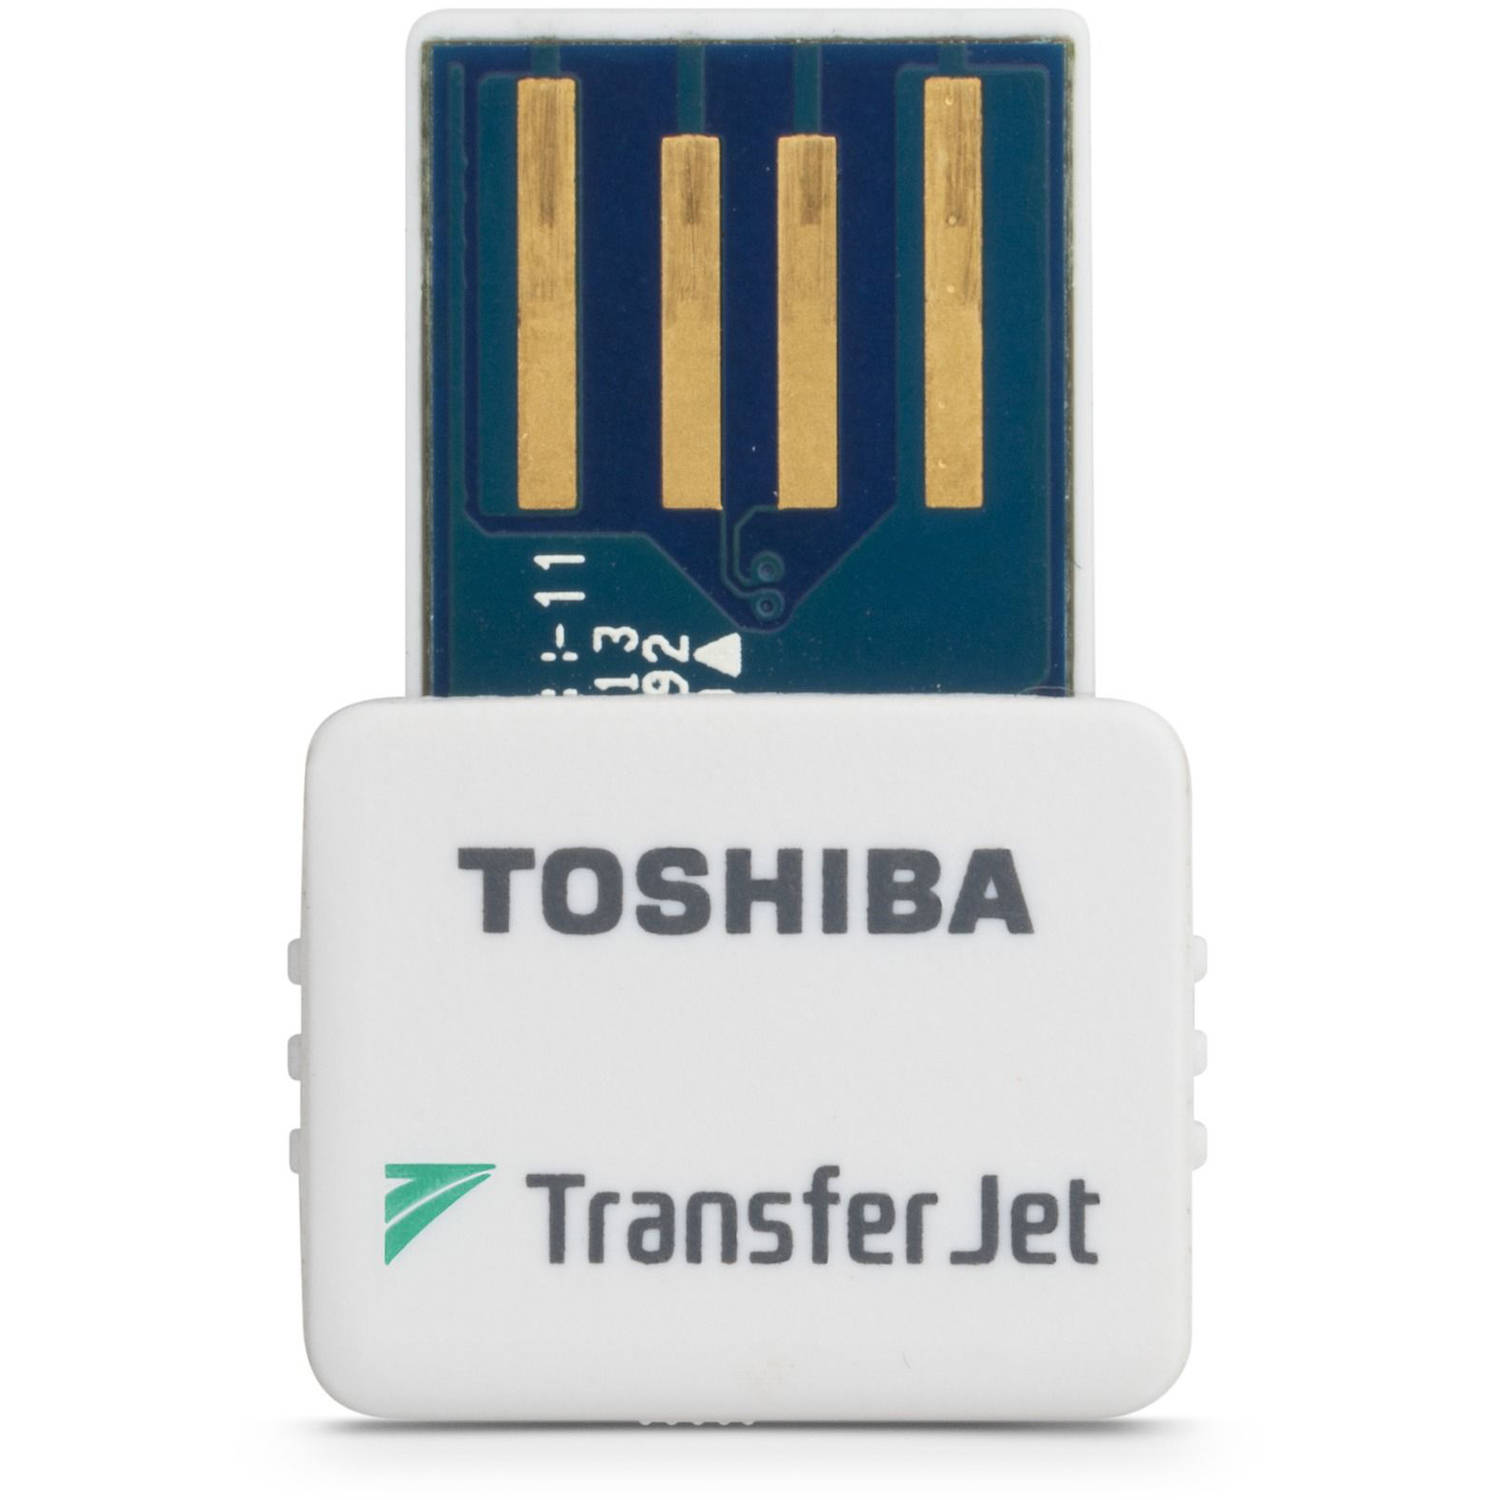 Transferjet Wireless Adapter - image 1 of 1